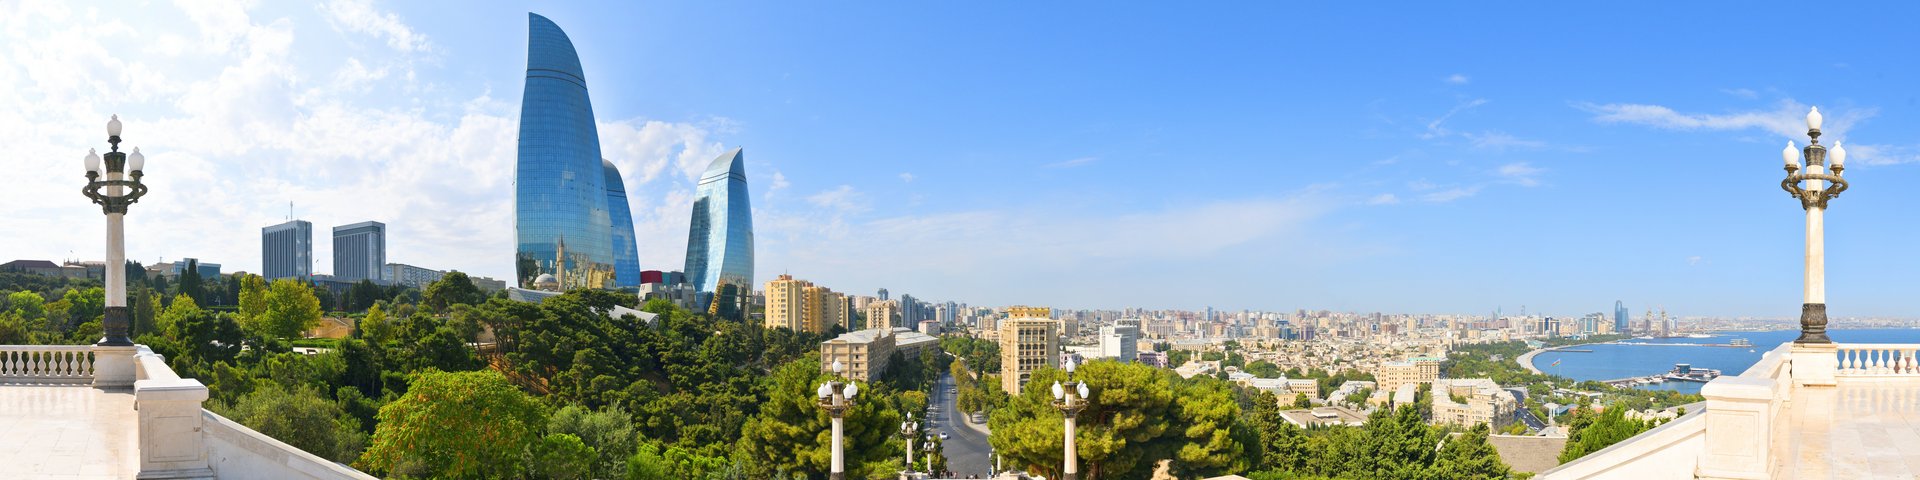 Blick auf die Hochhäuser und die ganze Stadt Baku in Aserbaidschan